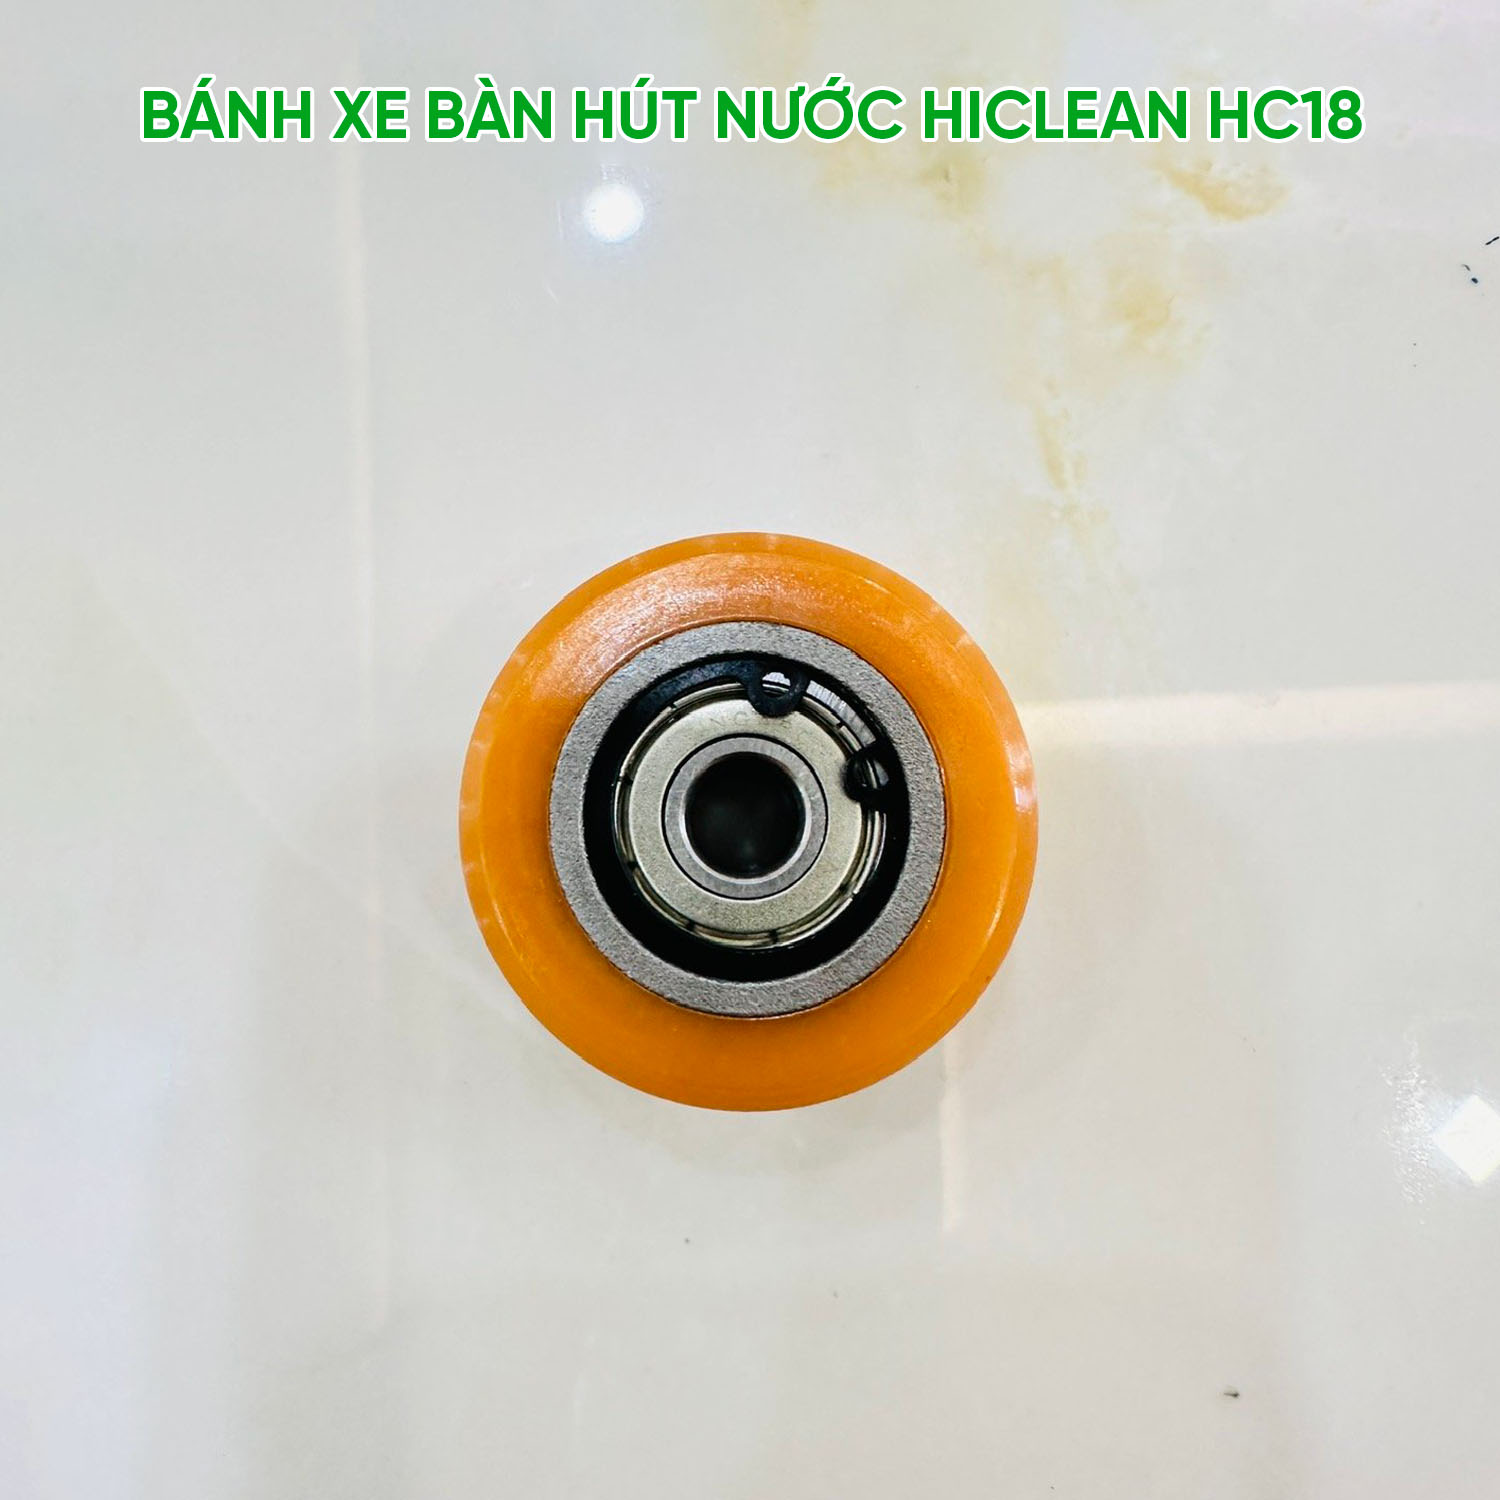 banh_xe_ban_hut_may_cha_san_hiclean_hc18